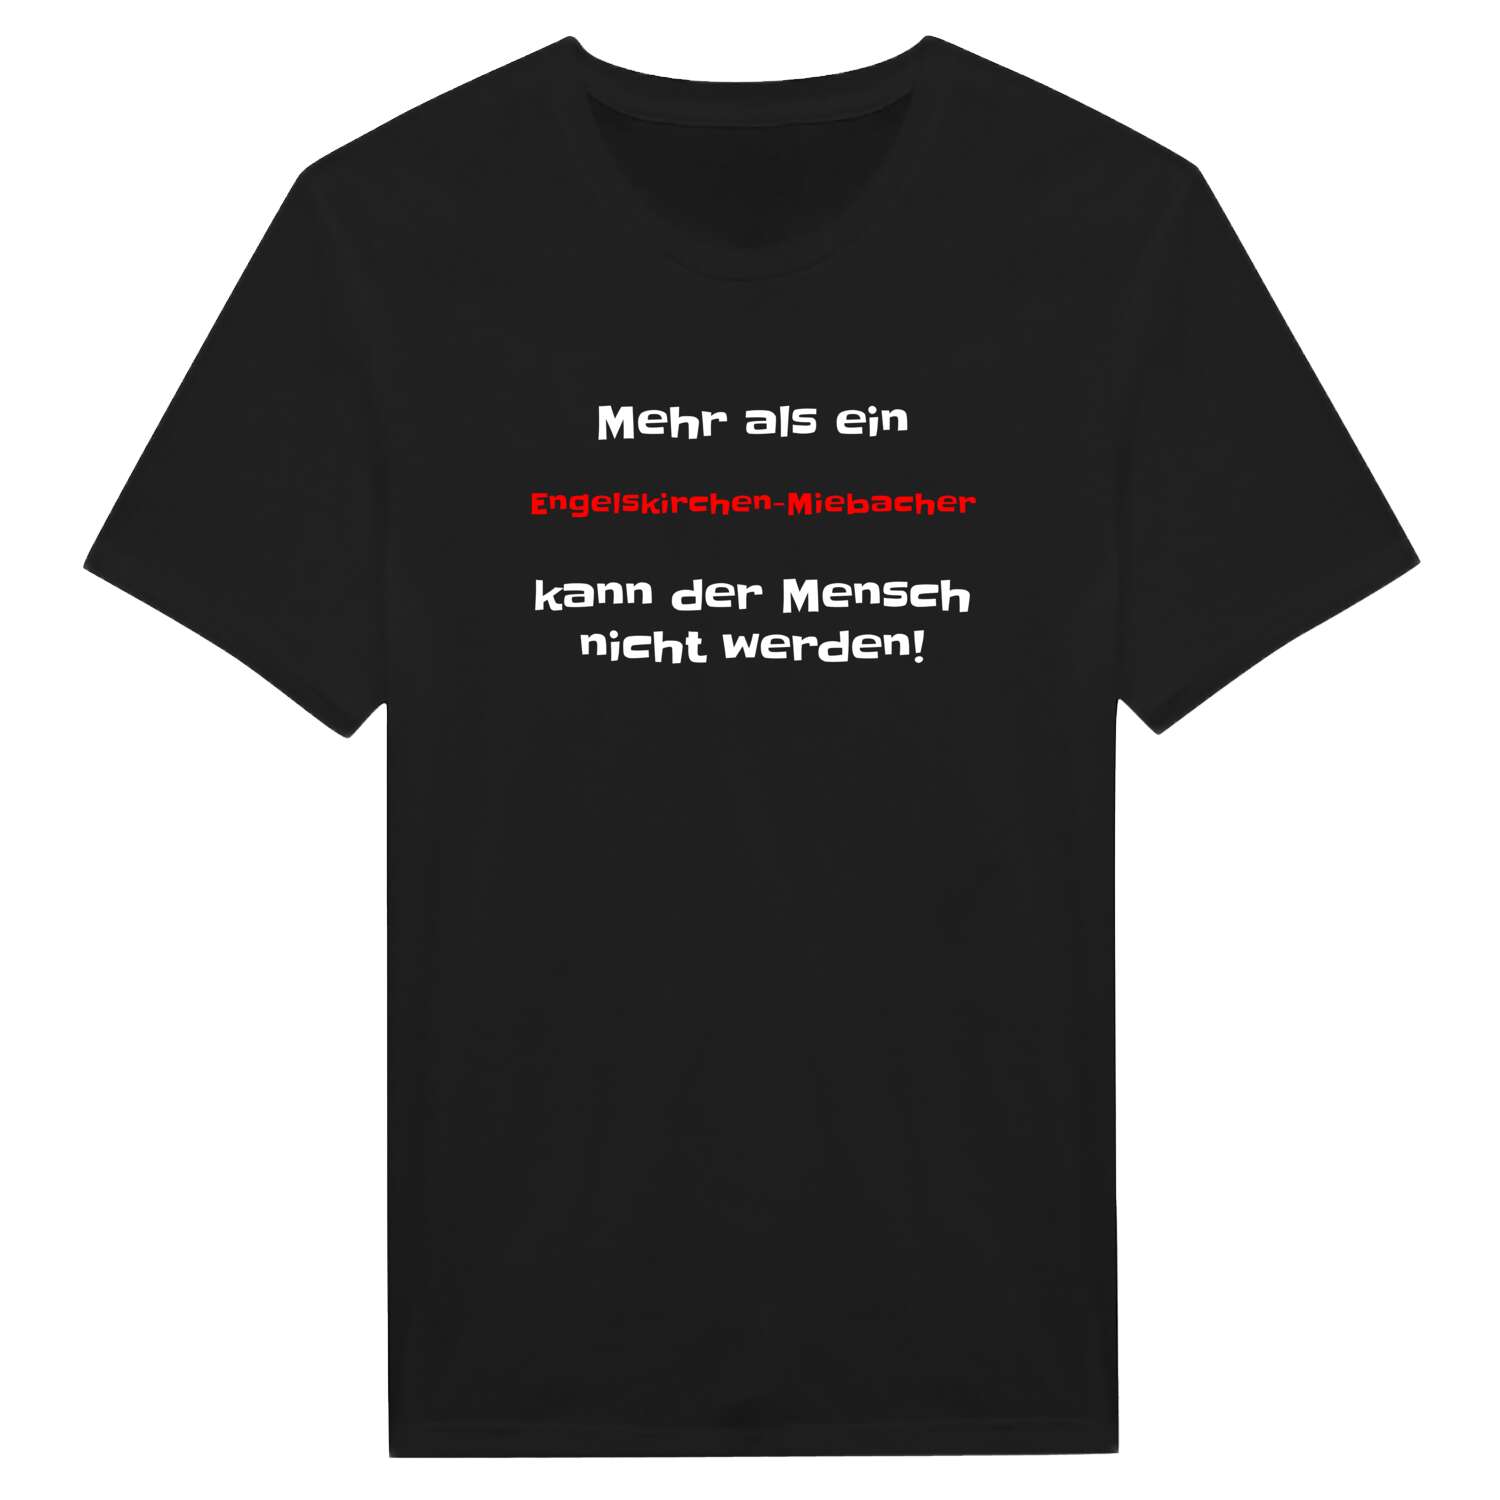 Engelskirchen-Miebach T-Shirt »Mehr als ein«